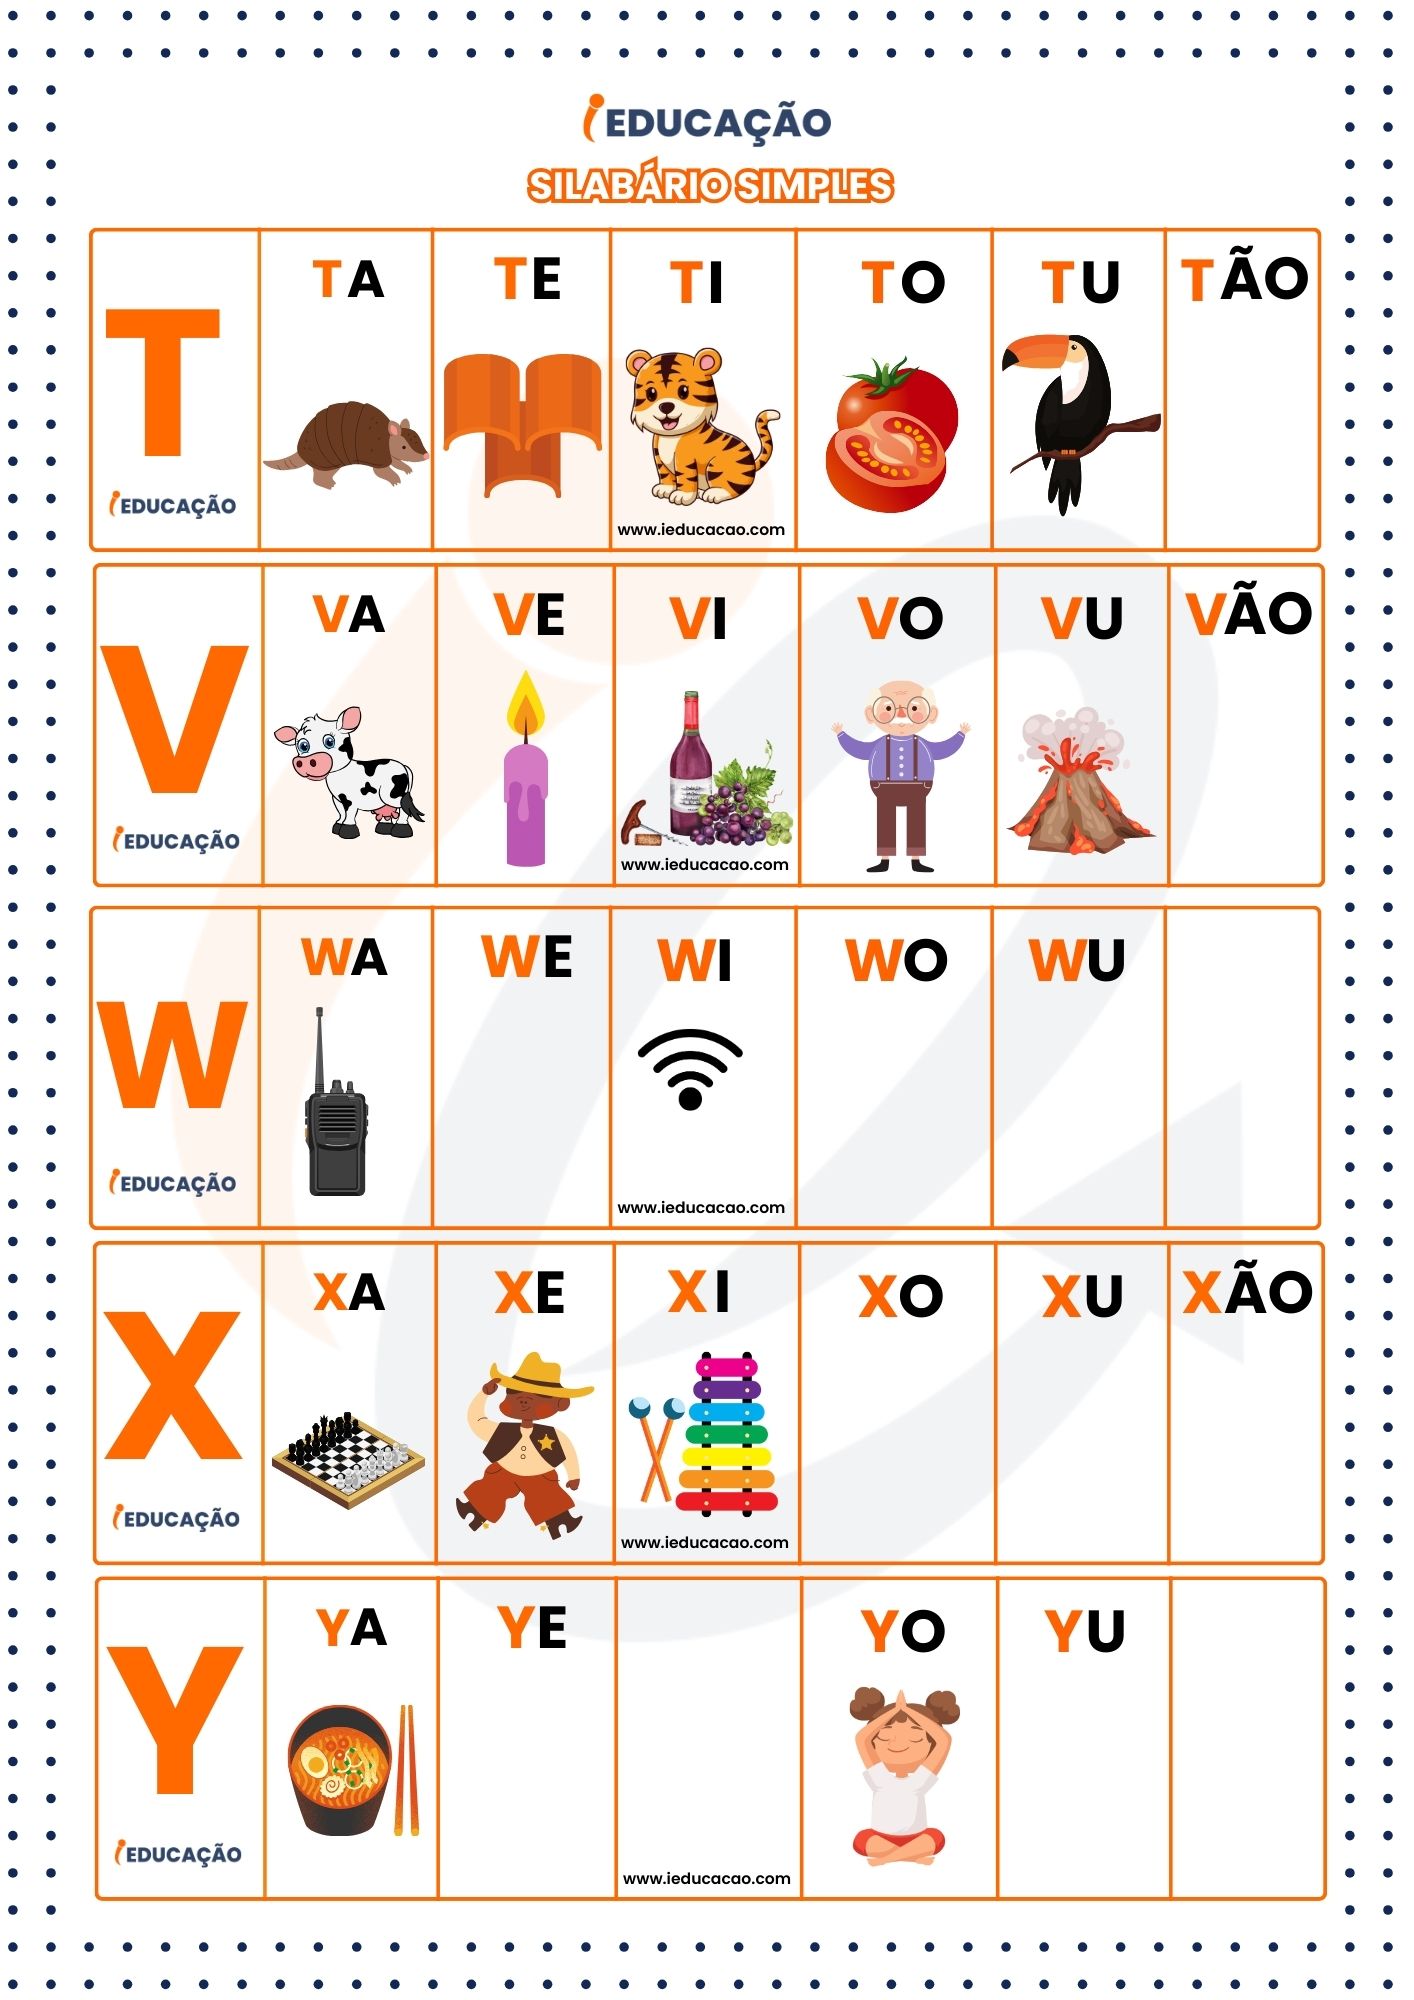 Silabário Simples com figuras representativas com letras T a Y- Silabário Simples ilustrativo